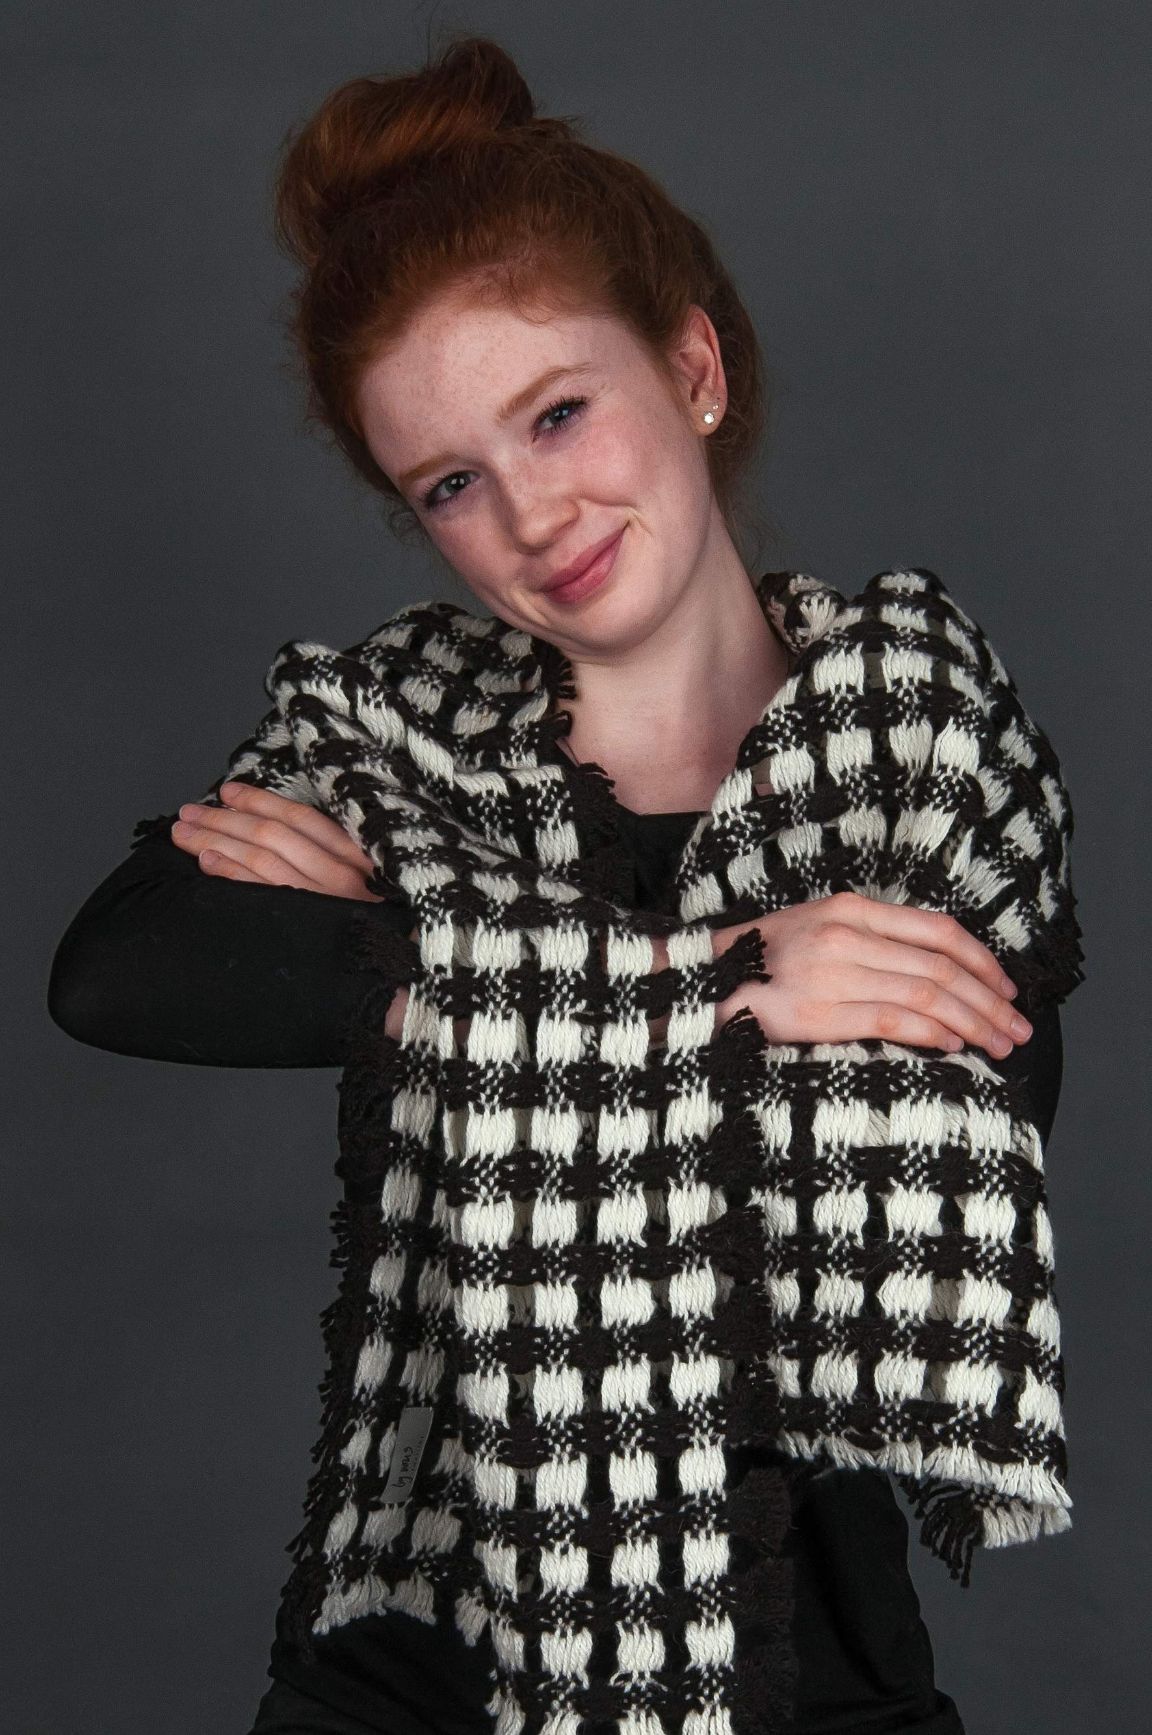 rothaarige junge Frau trägt schwarz-weiss karierten Alpaka Schal